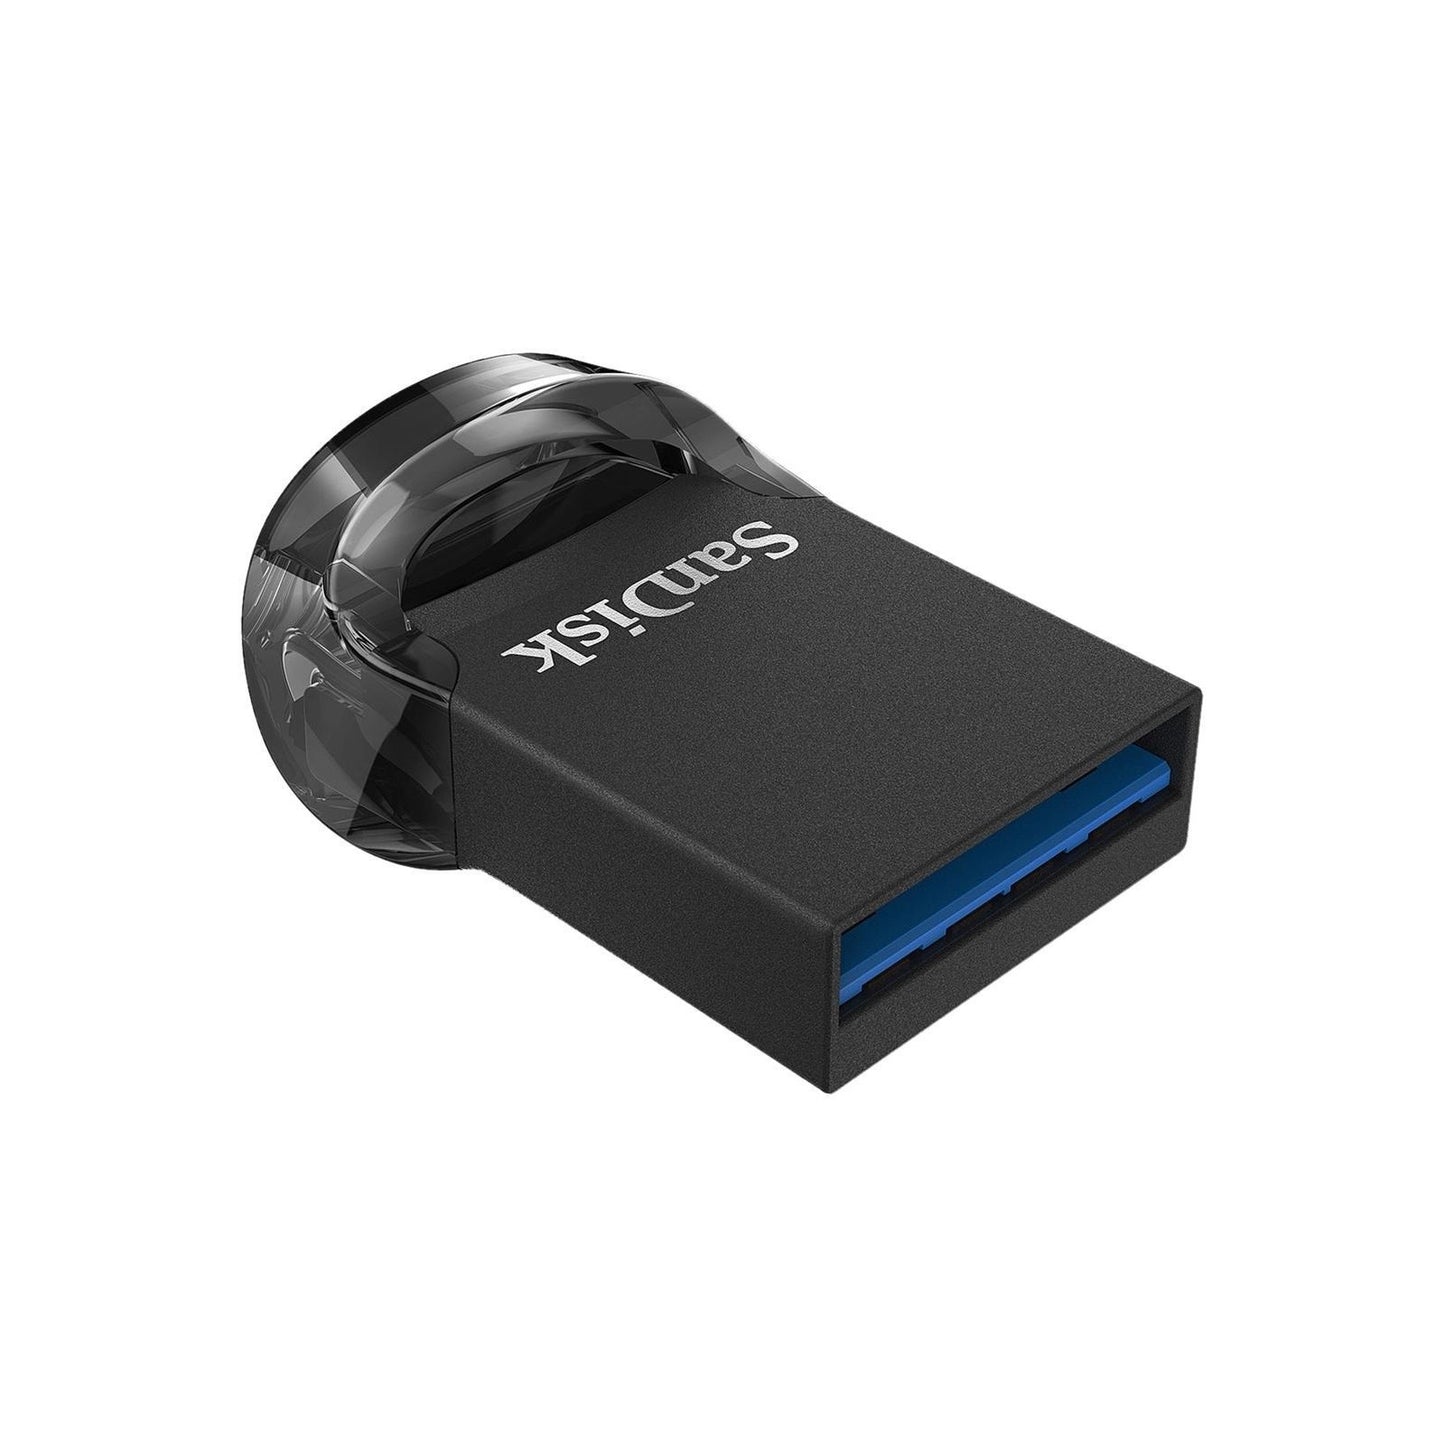 Sandisk Ultra Fit 64GB 130MB/S USB 3.1 Flash Drive Memory Stick Pen PC MAC